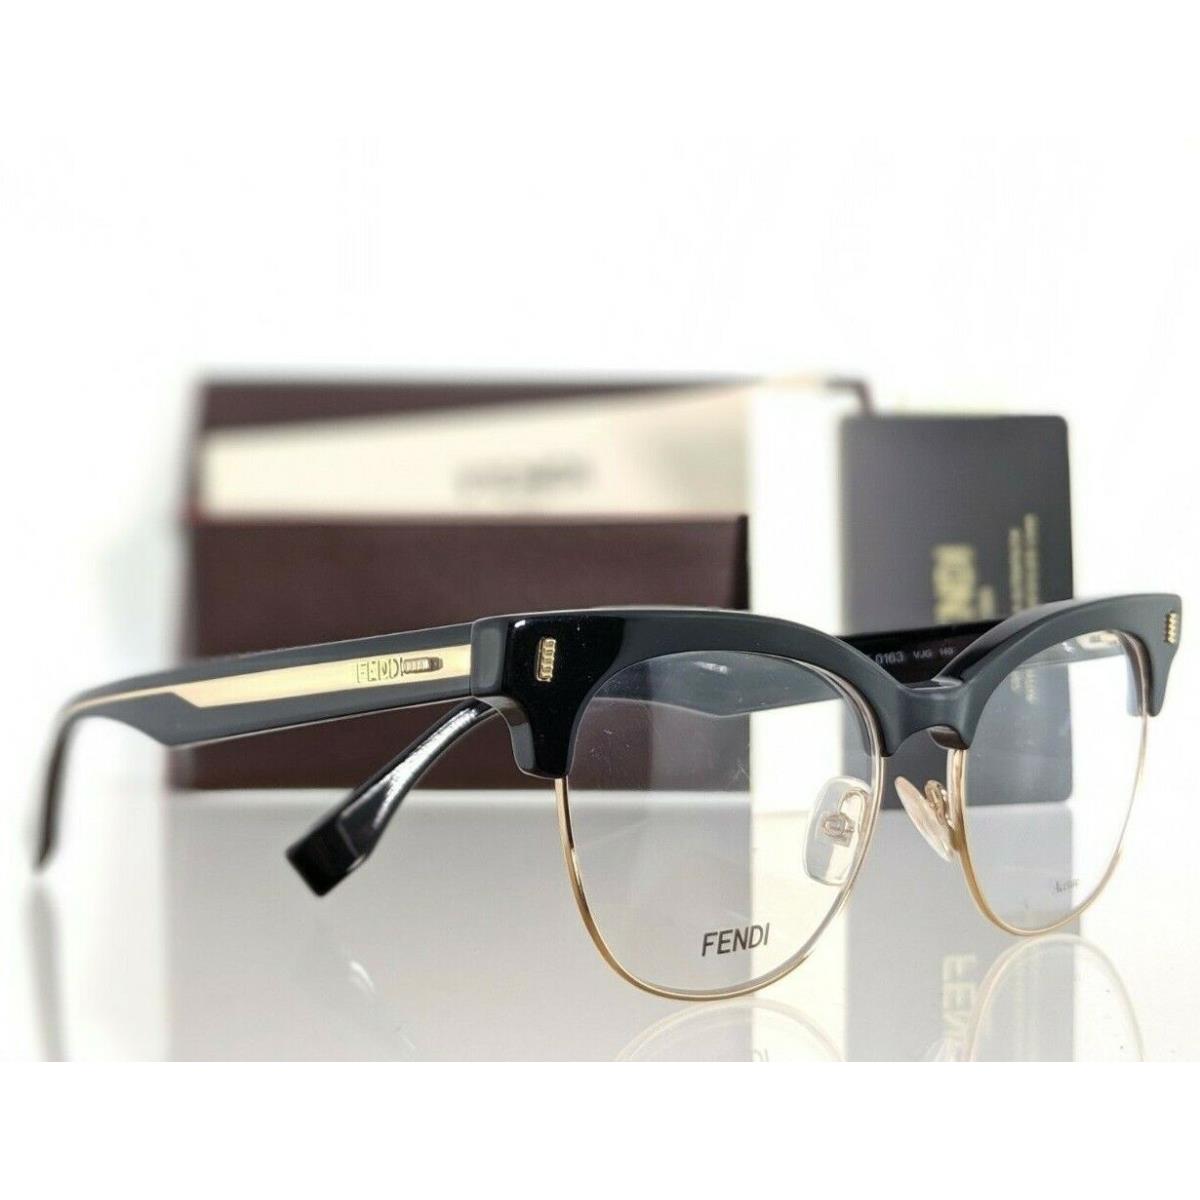 Fendi eyeglasses  - Black & Gold Frame, Clear Lens 1